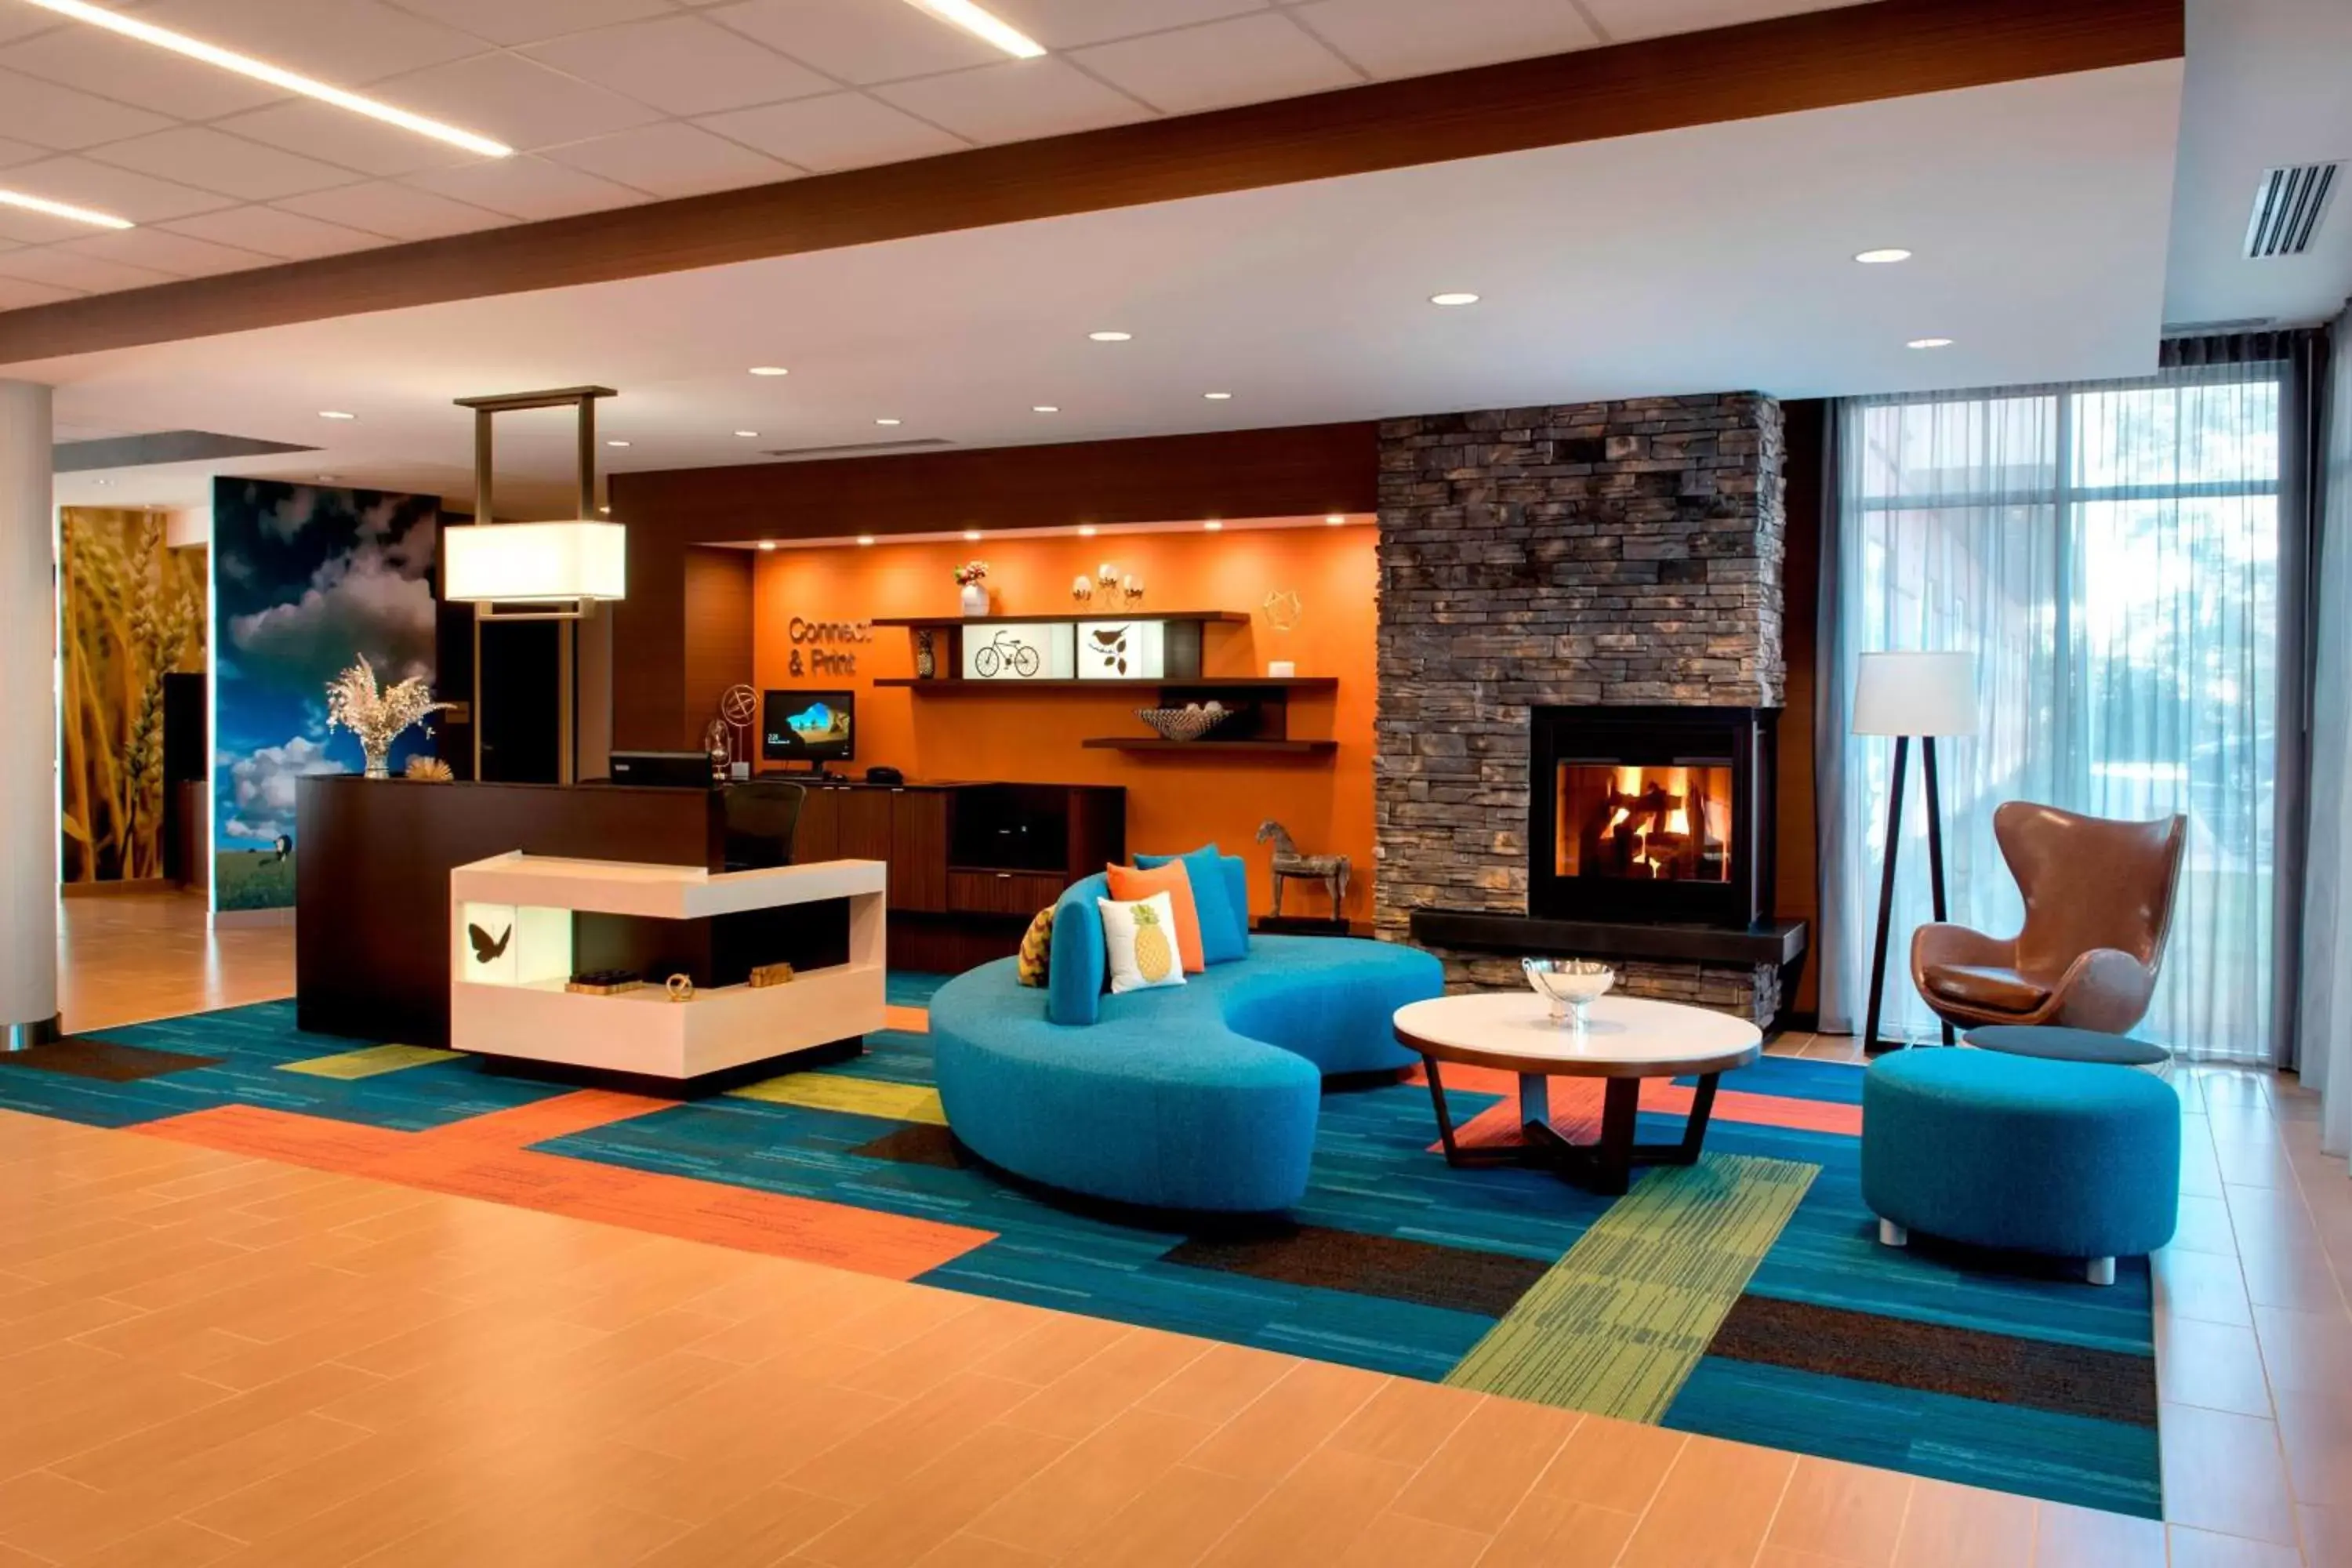 Lobby or reception, Lobby/Reception in Fairfield Inn & Suites by Marriott Buffalo Amherst/University